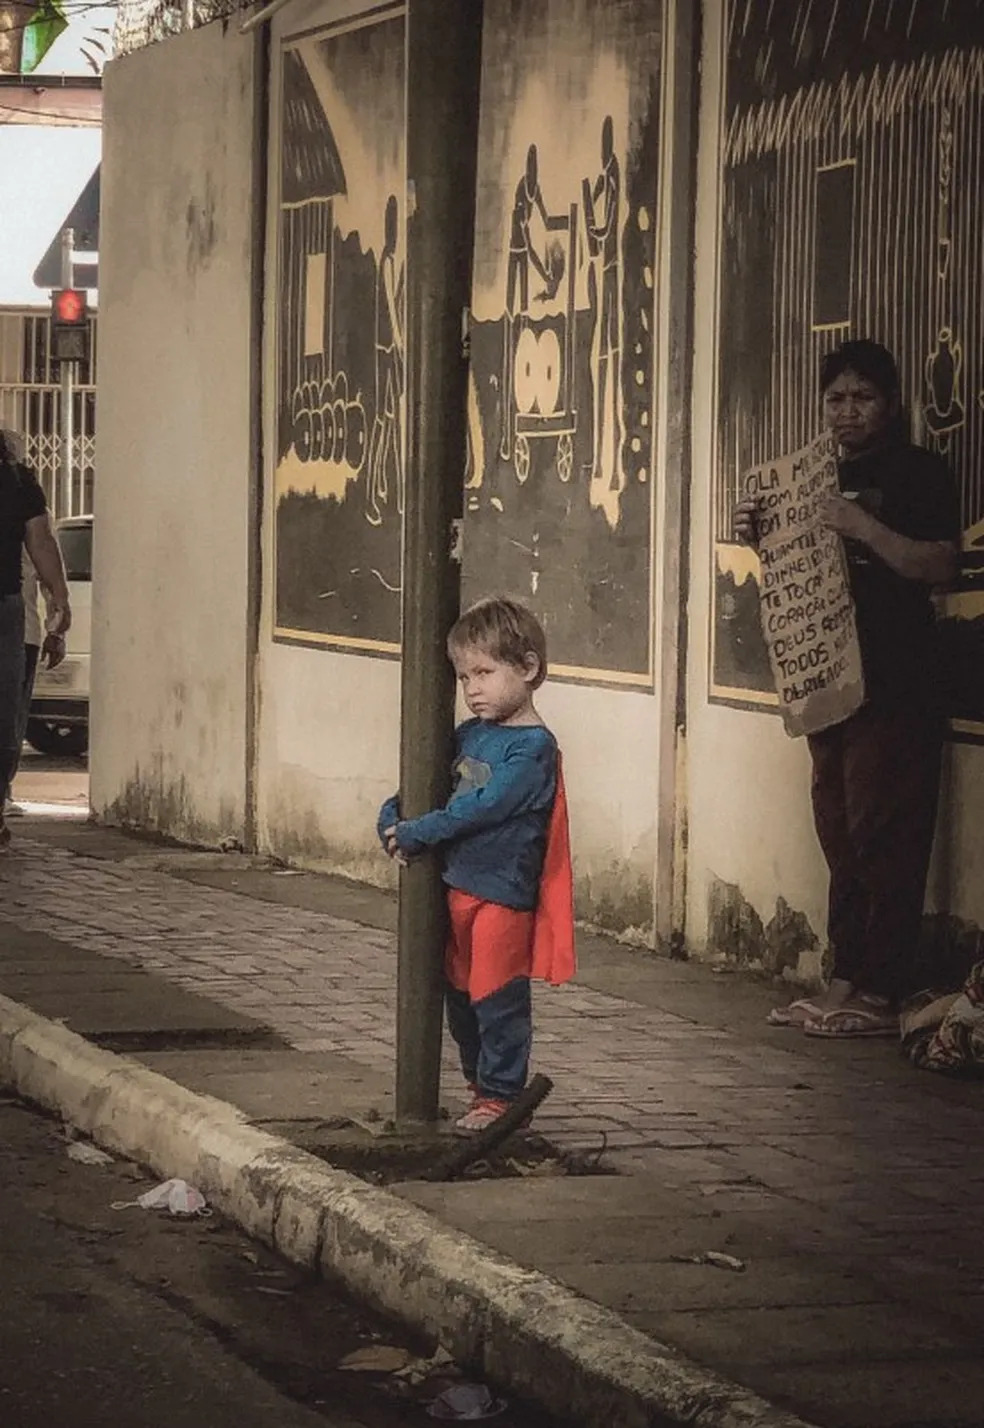 psicologiasdobrasil.com.br - Foto de criança pedindo dinheiro em semáfoto no Acre comove a web